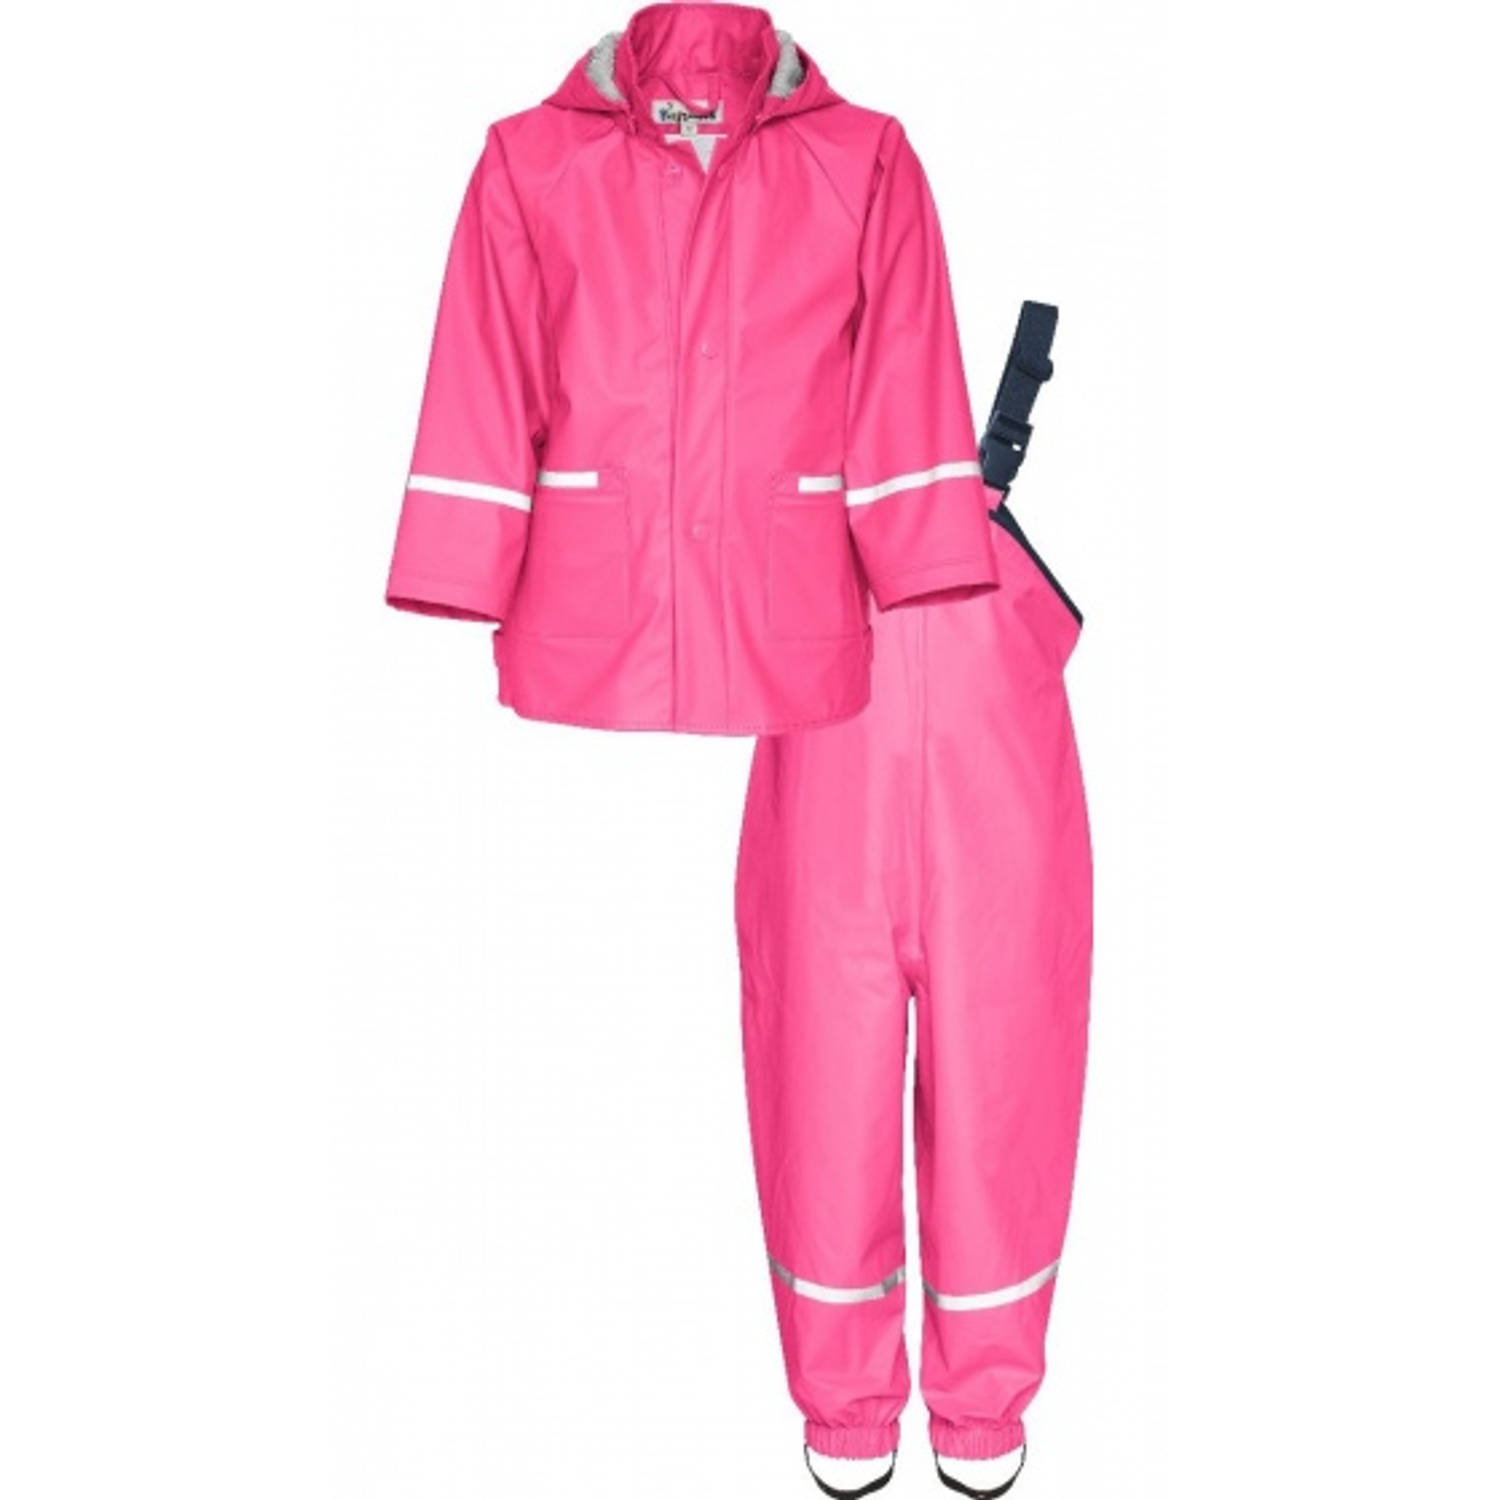 bevind zich Afkorting Dekking regenpak tweedelig Basic junior roze maat 80 | Blokker